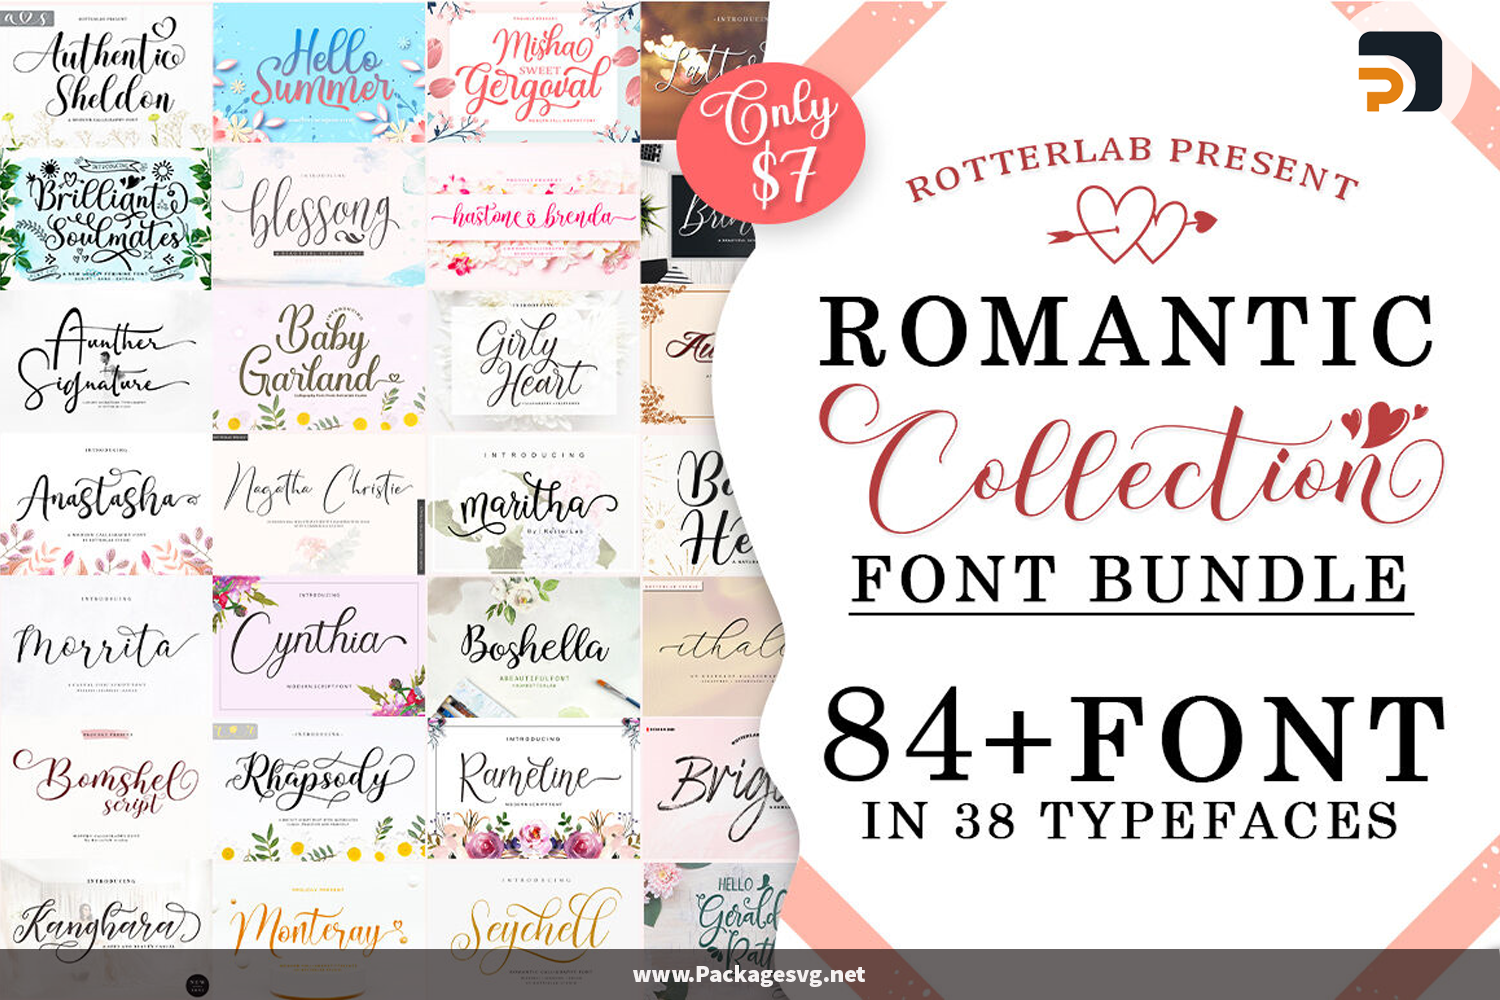 Romantic Collection Font Bundle